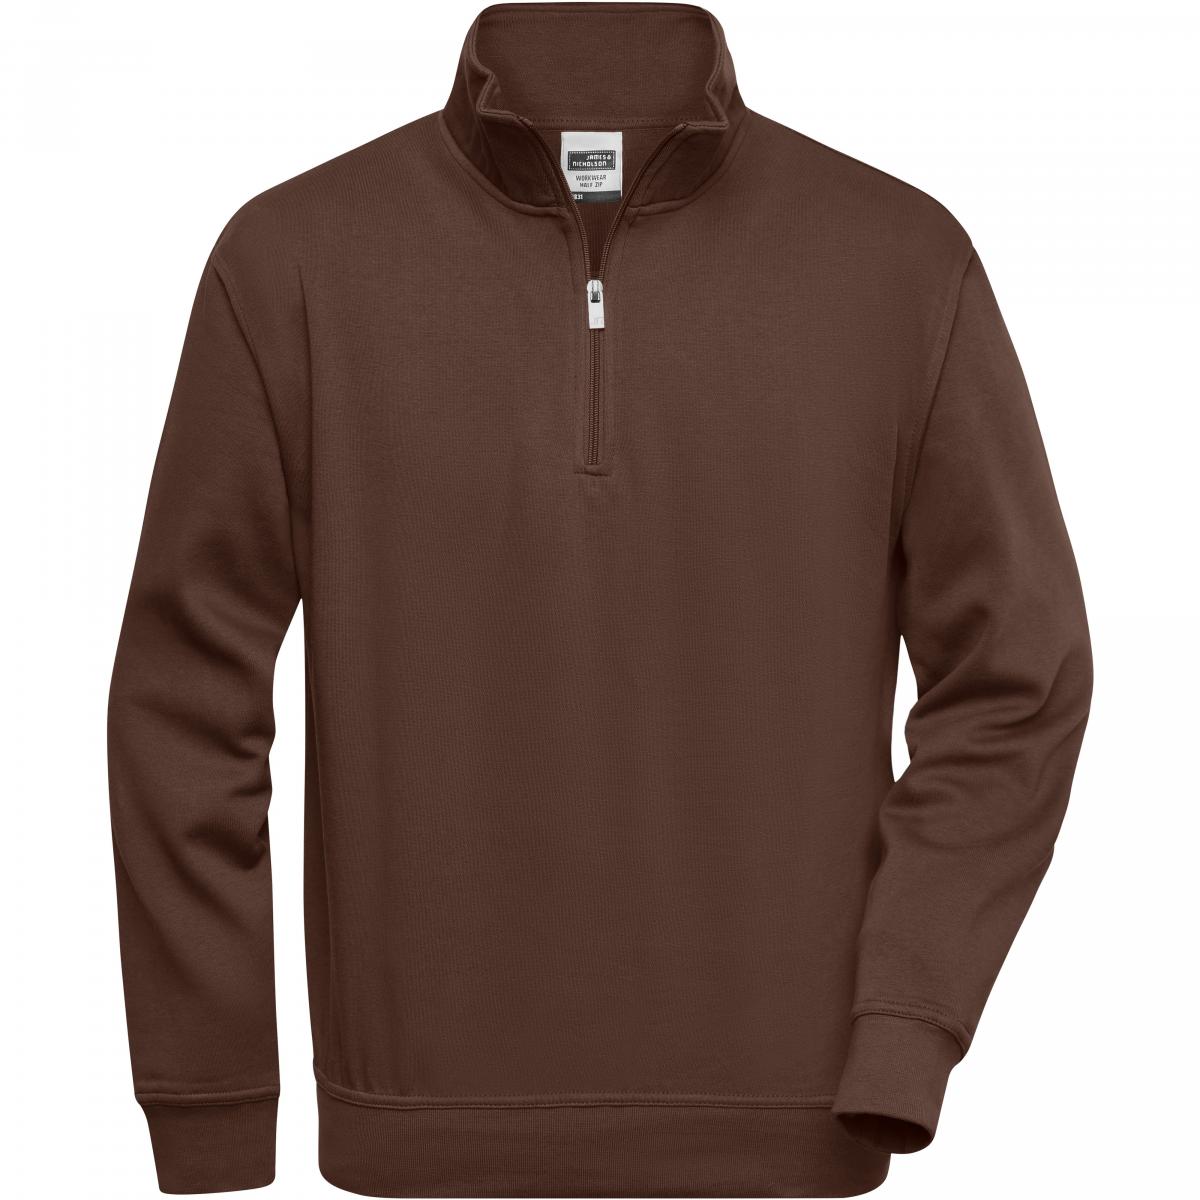 Hersteller: James+Nicholson Herstellernummer: JN831 Artikelbezeichnung: Workwear Half Zip Sweatshirt +Waschbar bis 60 °C Farbe: Brown